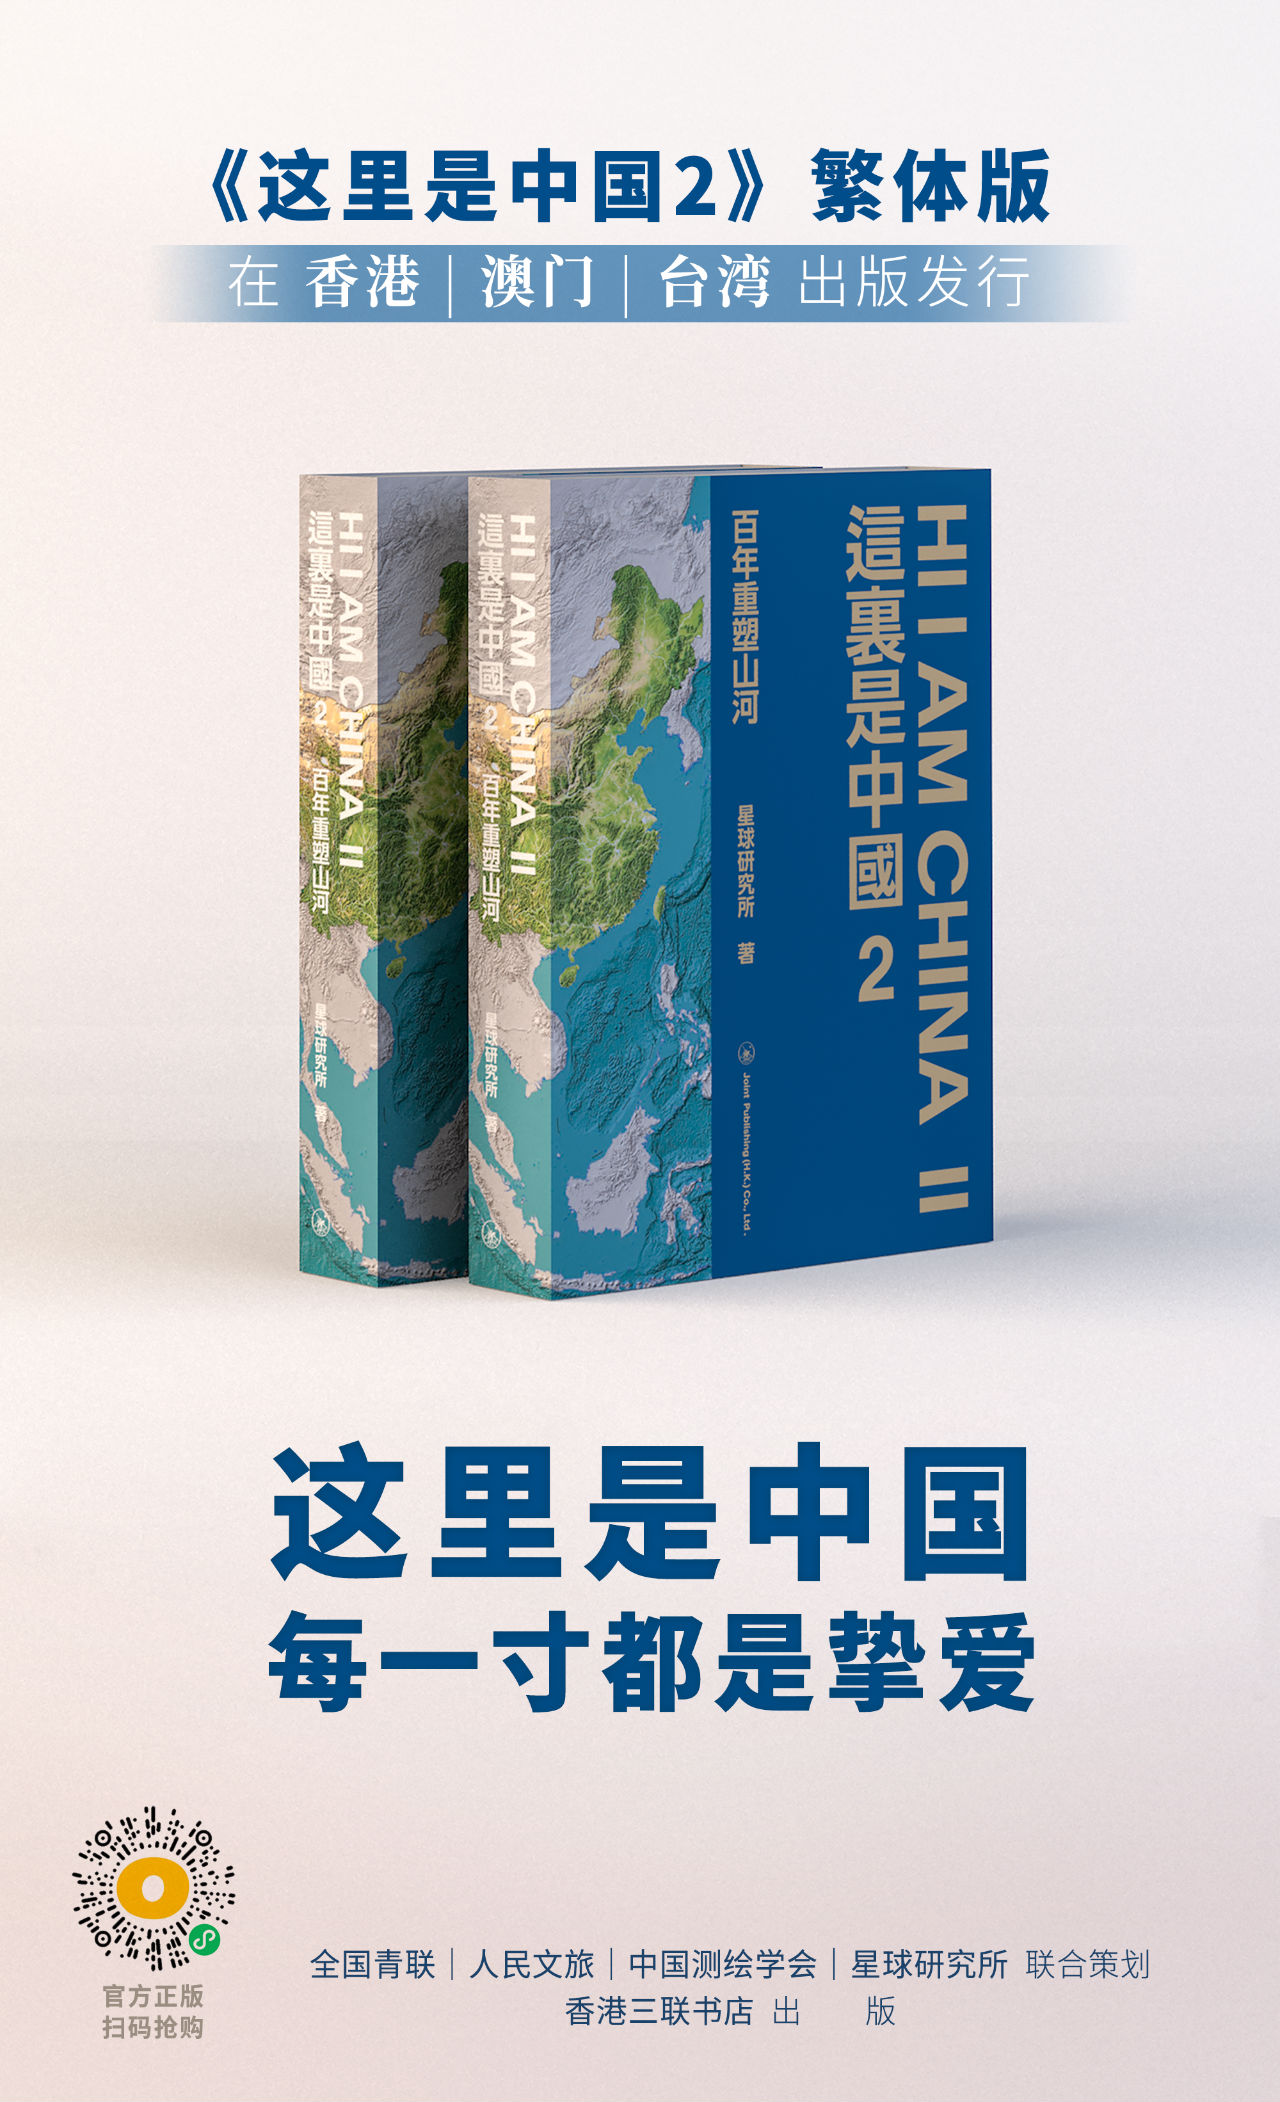   《这里是中国2》繁体版在香港、澳门、台湾出版发行   